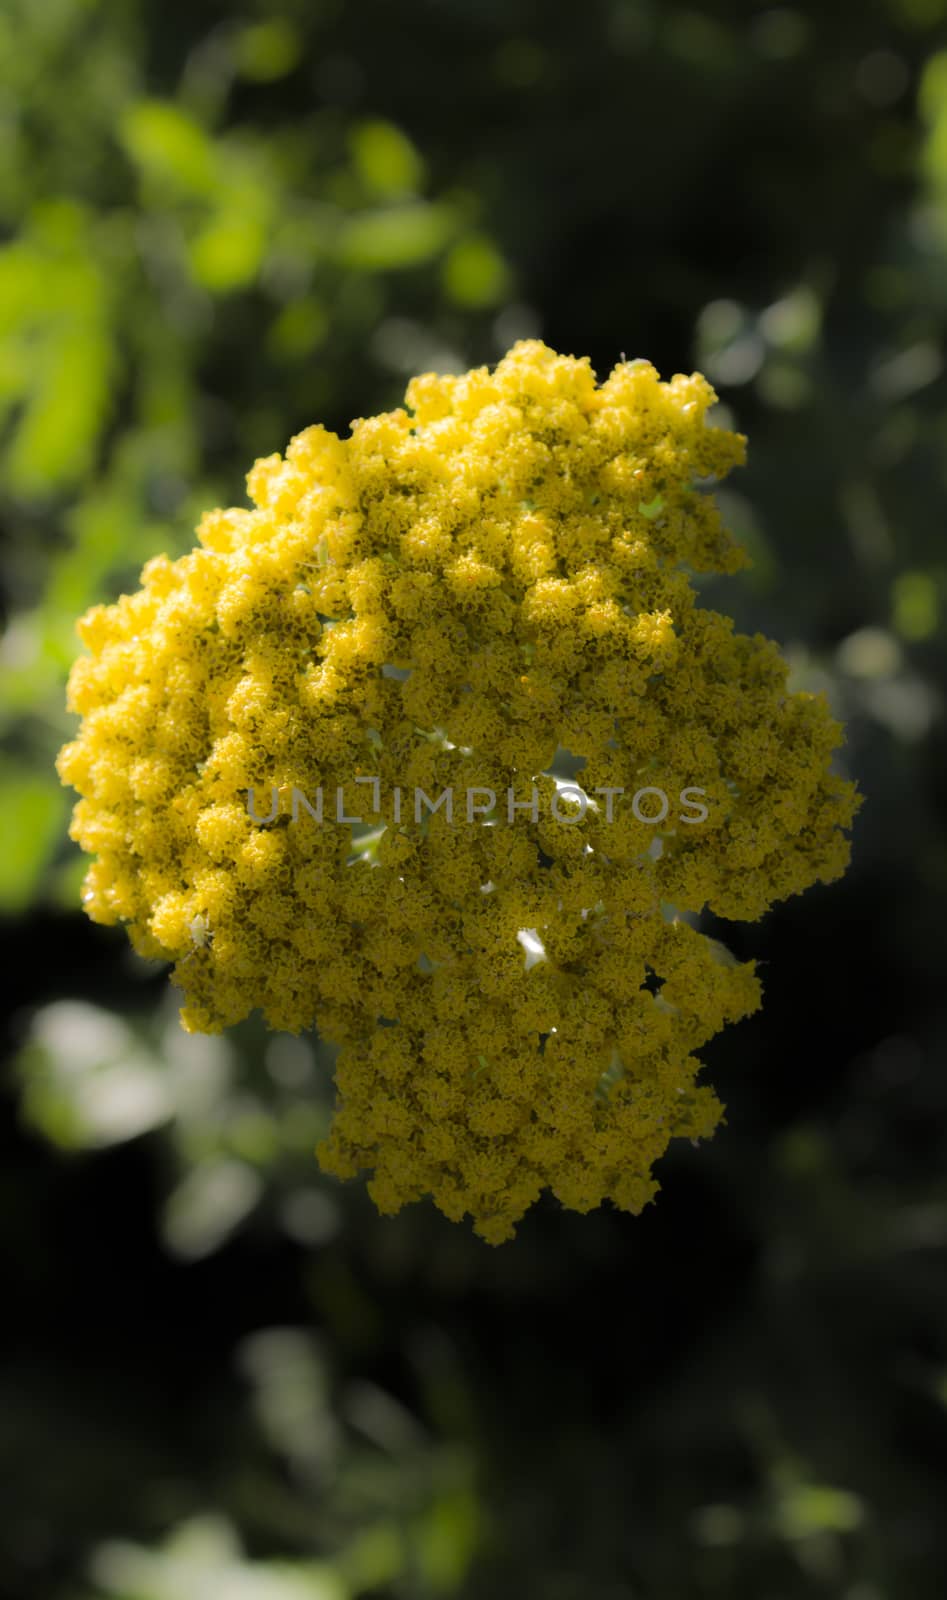 Macro yellow flower